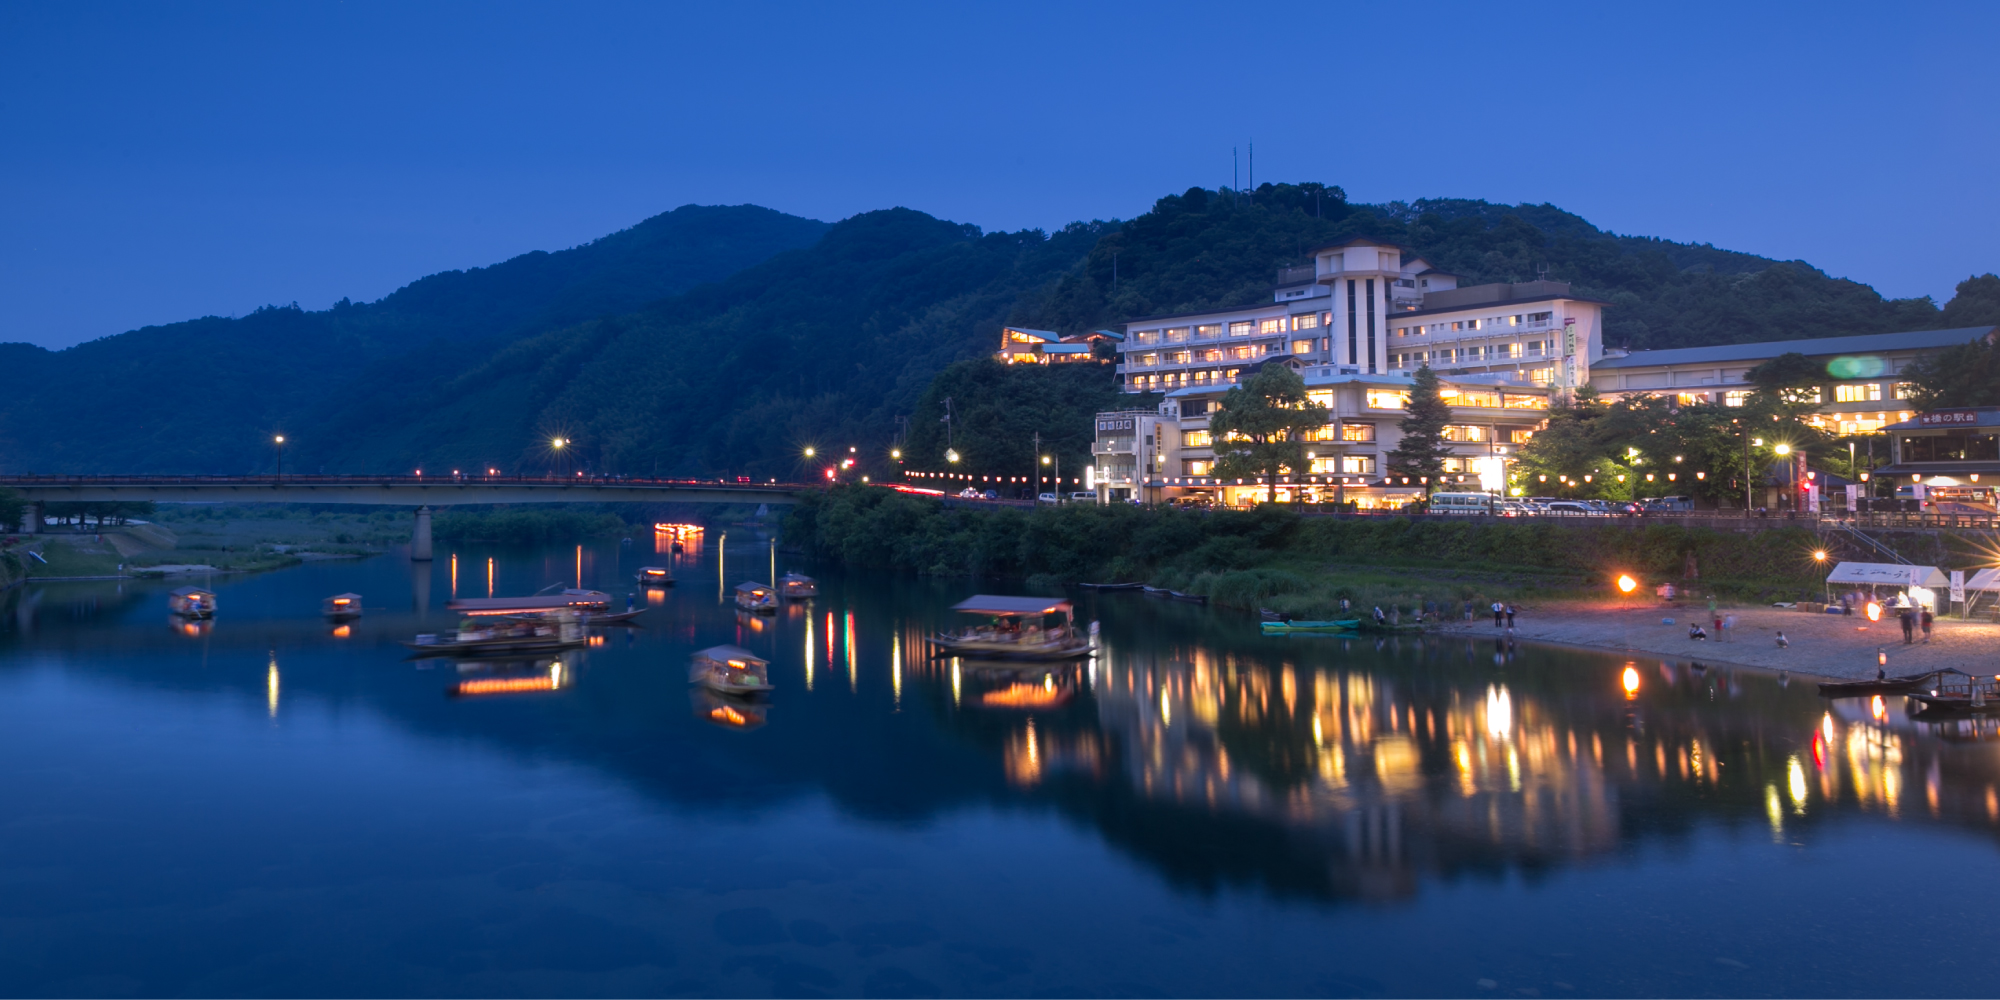 錦帯橋温泉 岩国国際観光ホテル